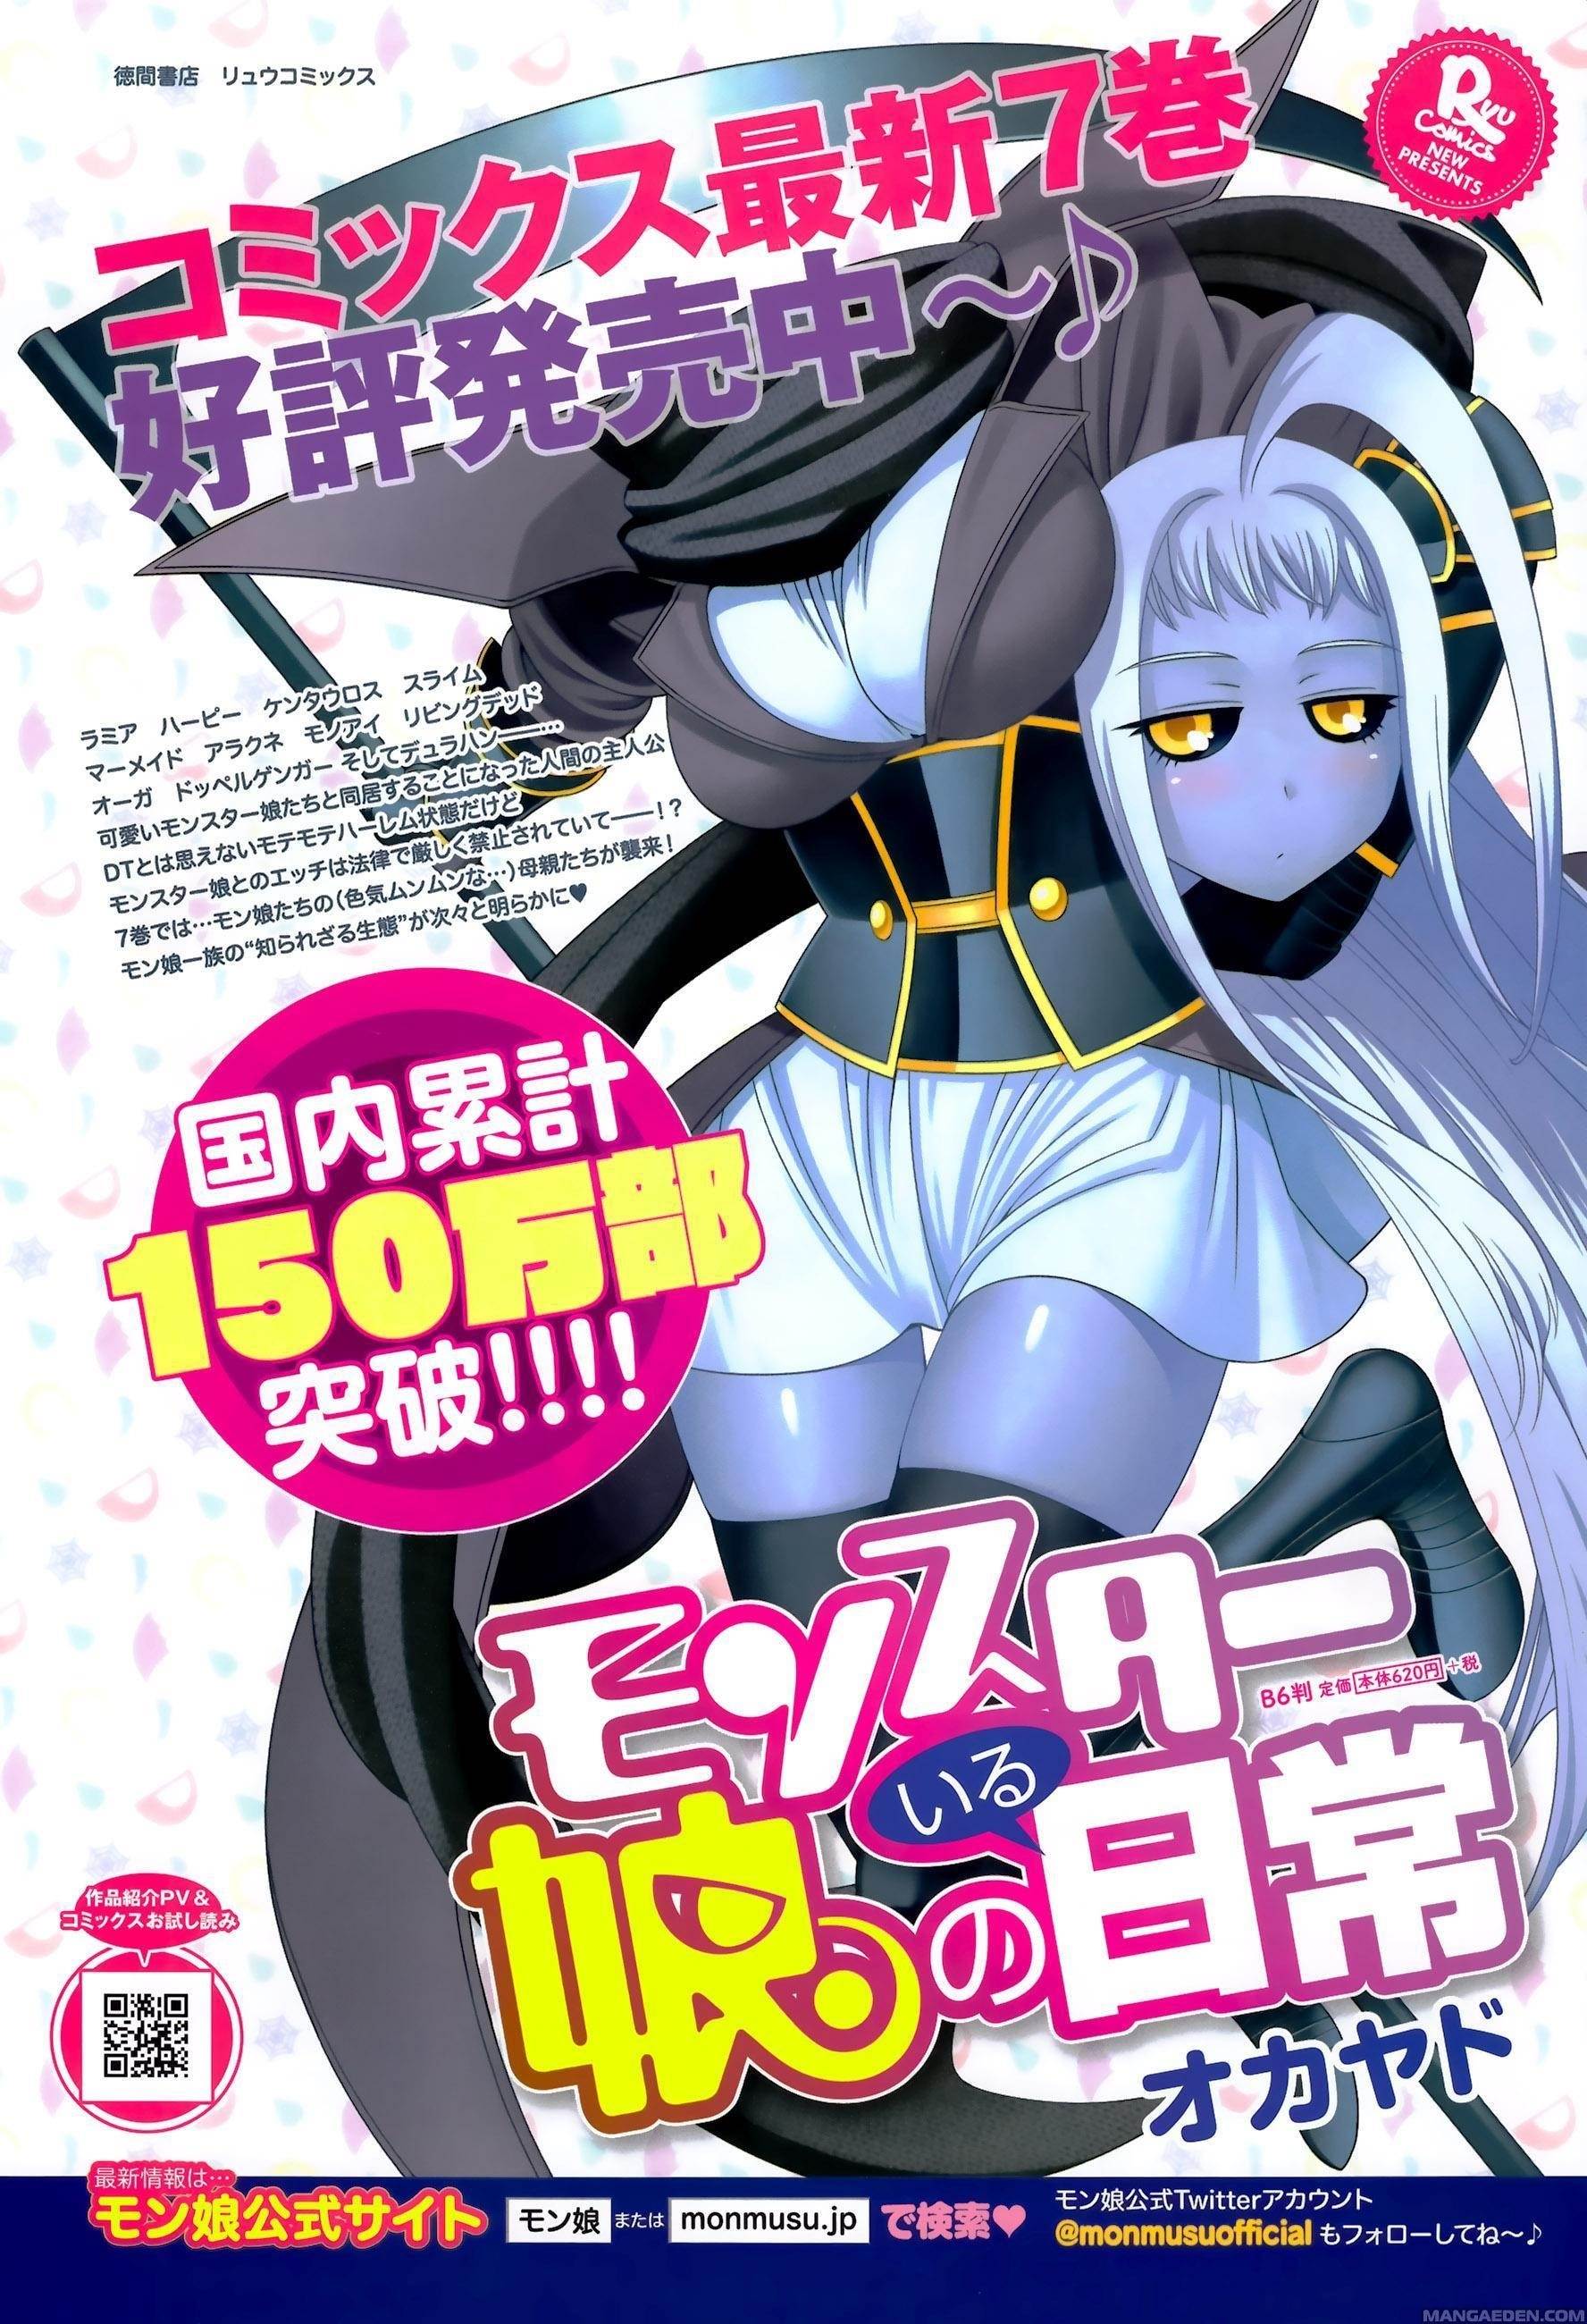 Read Tensei Shitara Ken Deshita Chapter 64 on Mangakakalot